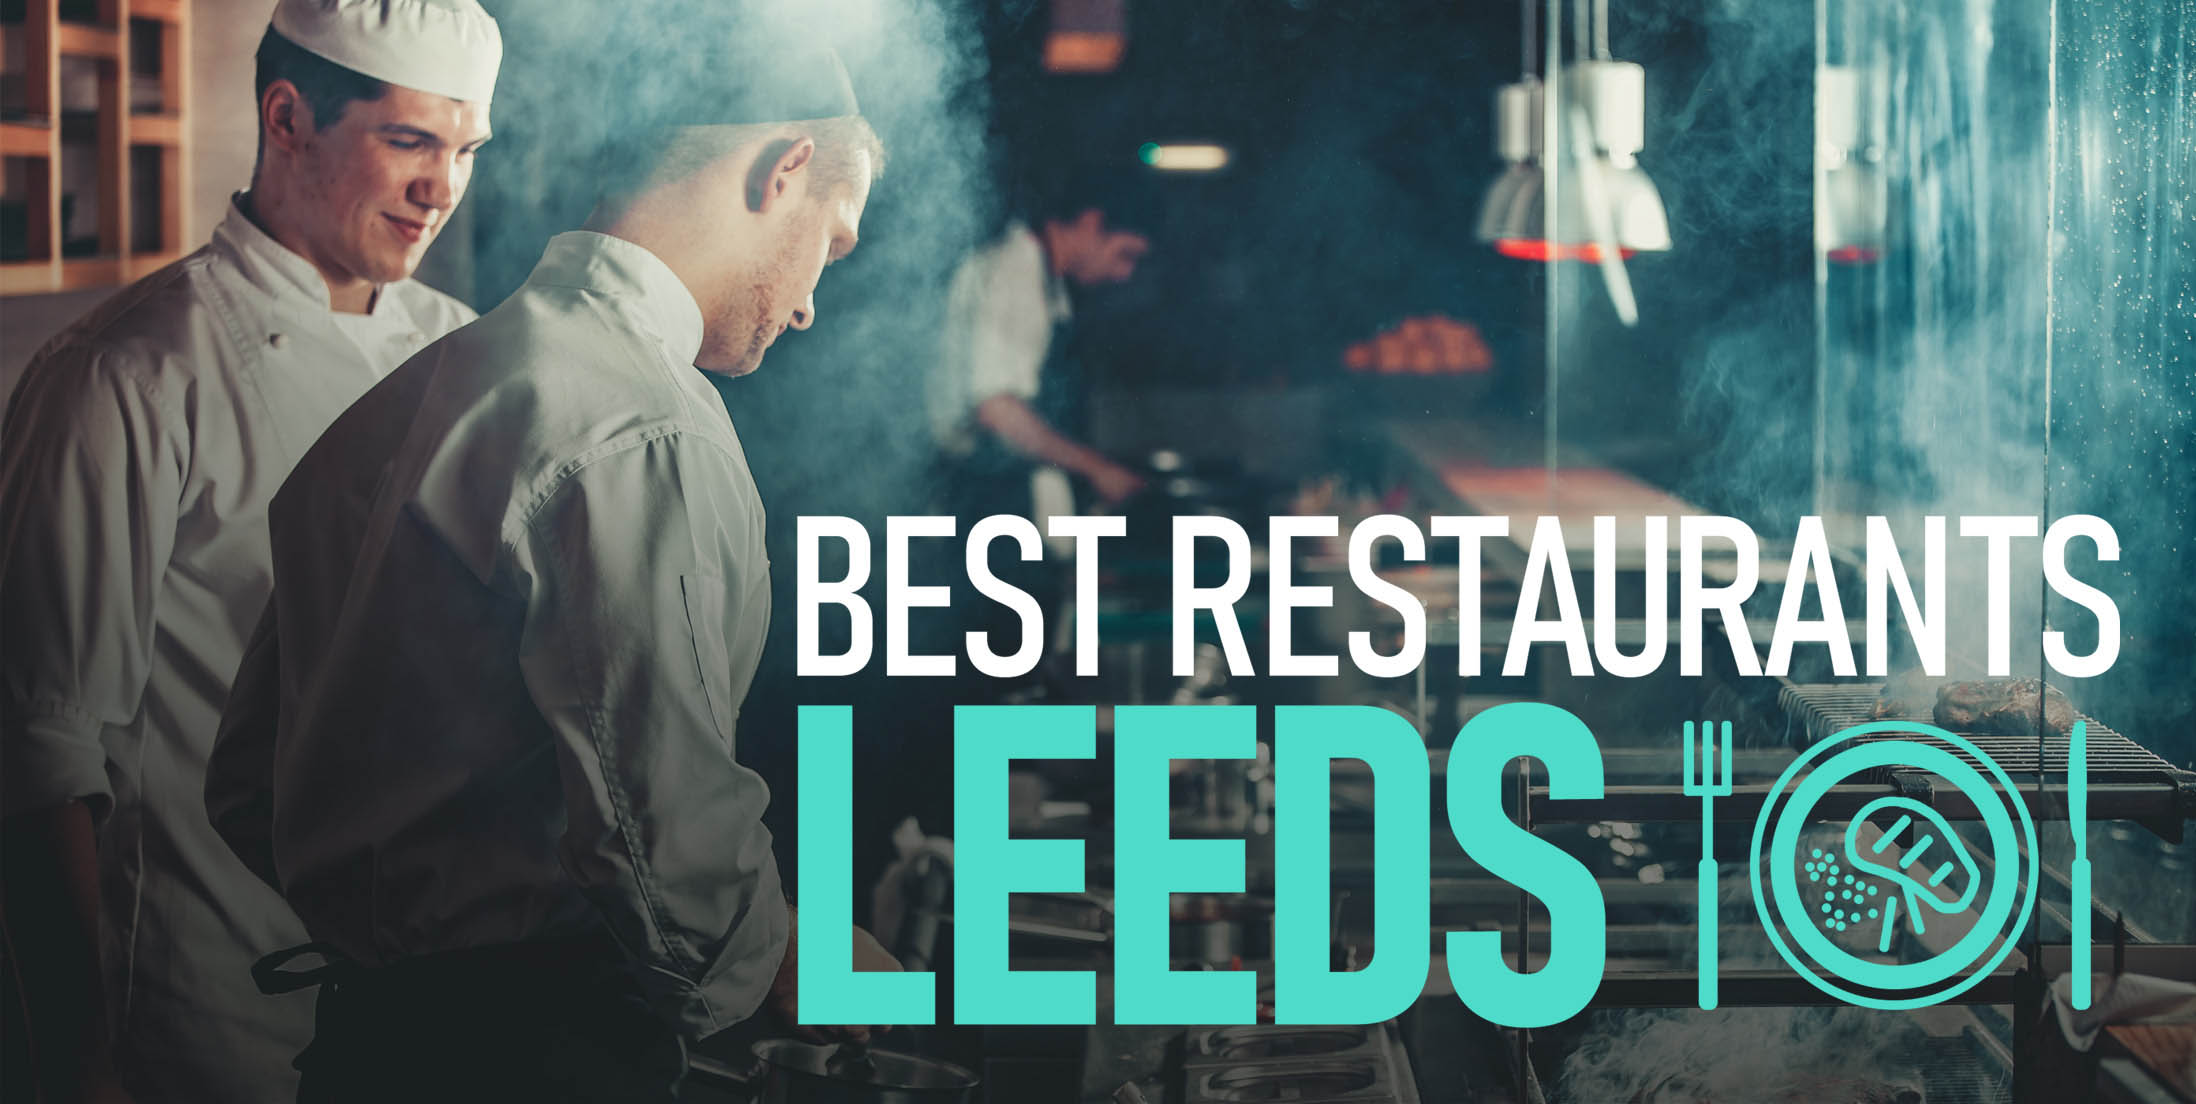 Most Popular Eateries | The 6 Best Restaurants in Leeds